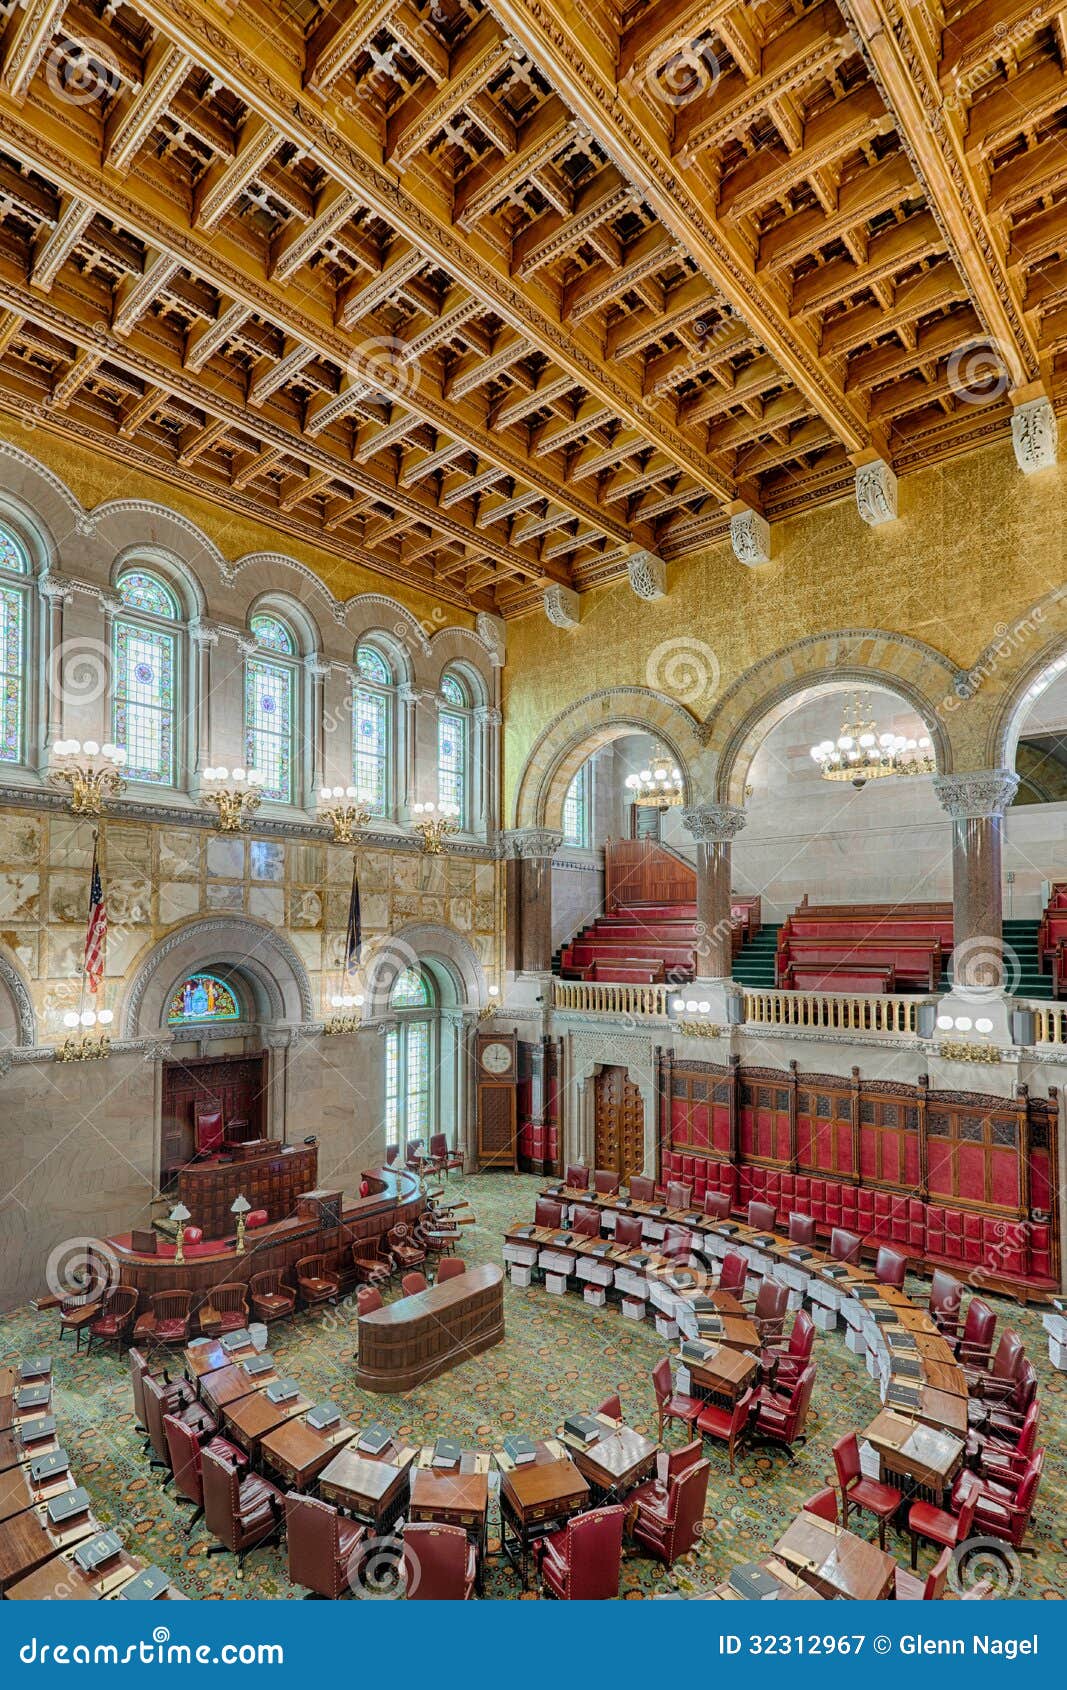 new york state senate chamber